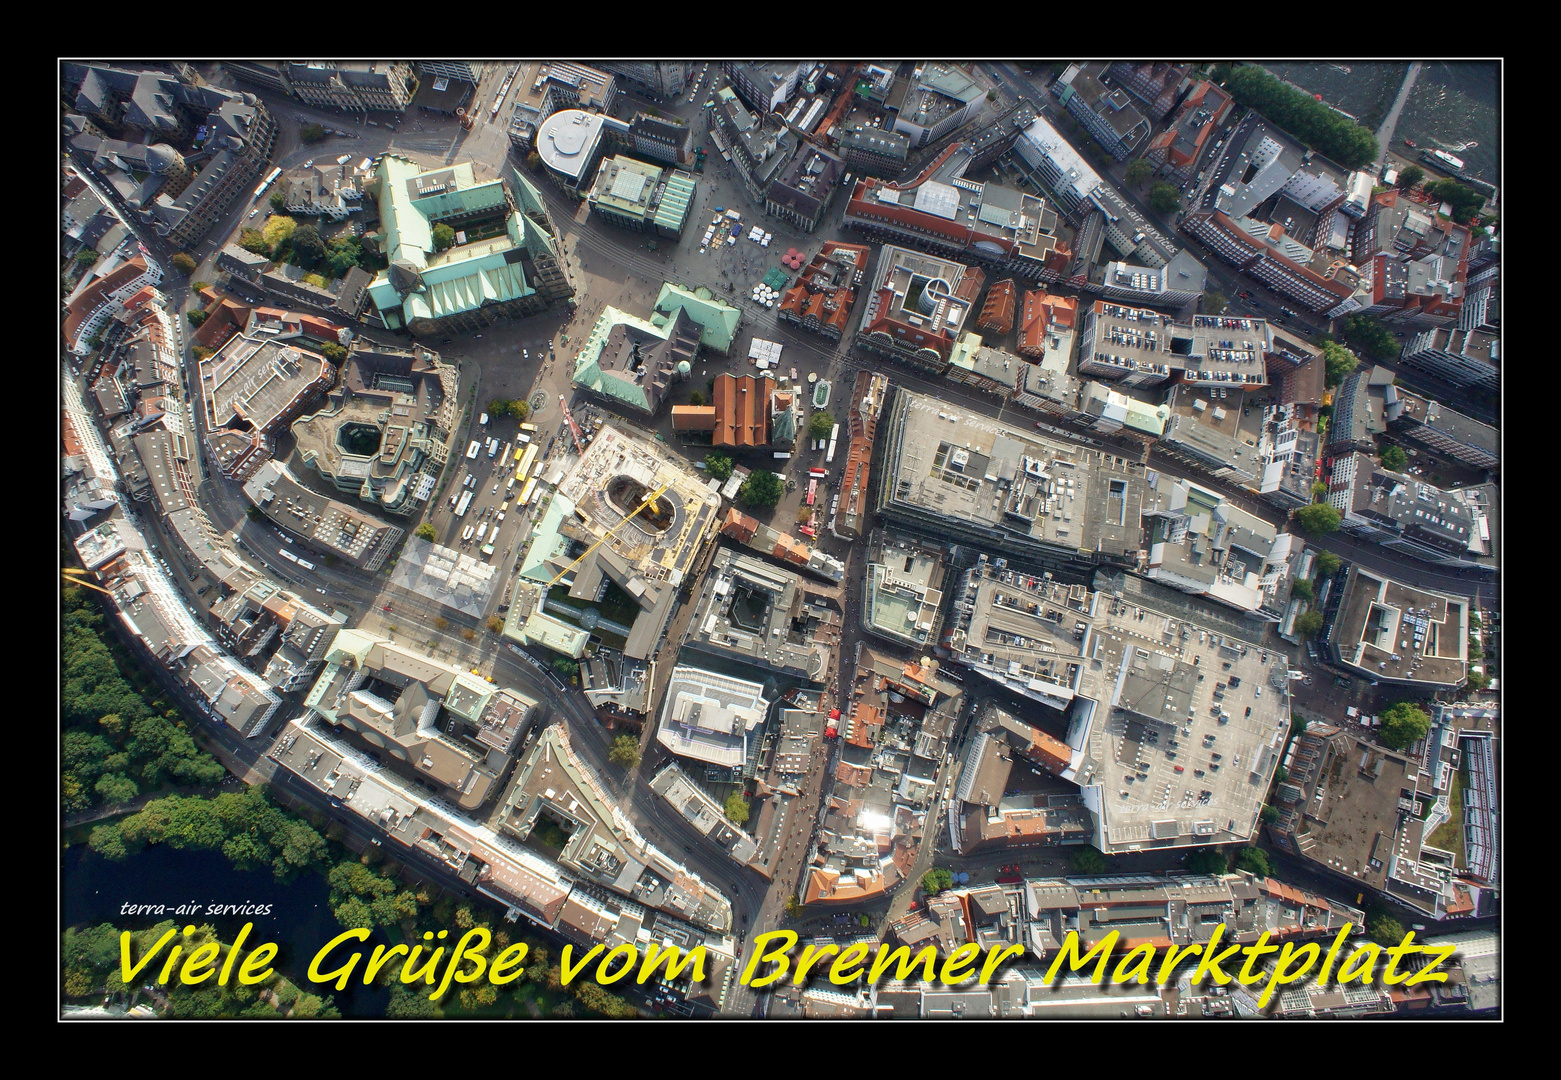 der Bremer Marktplatz - eine Postkarte